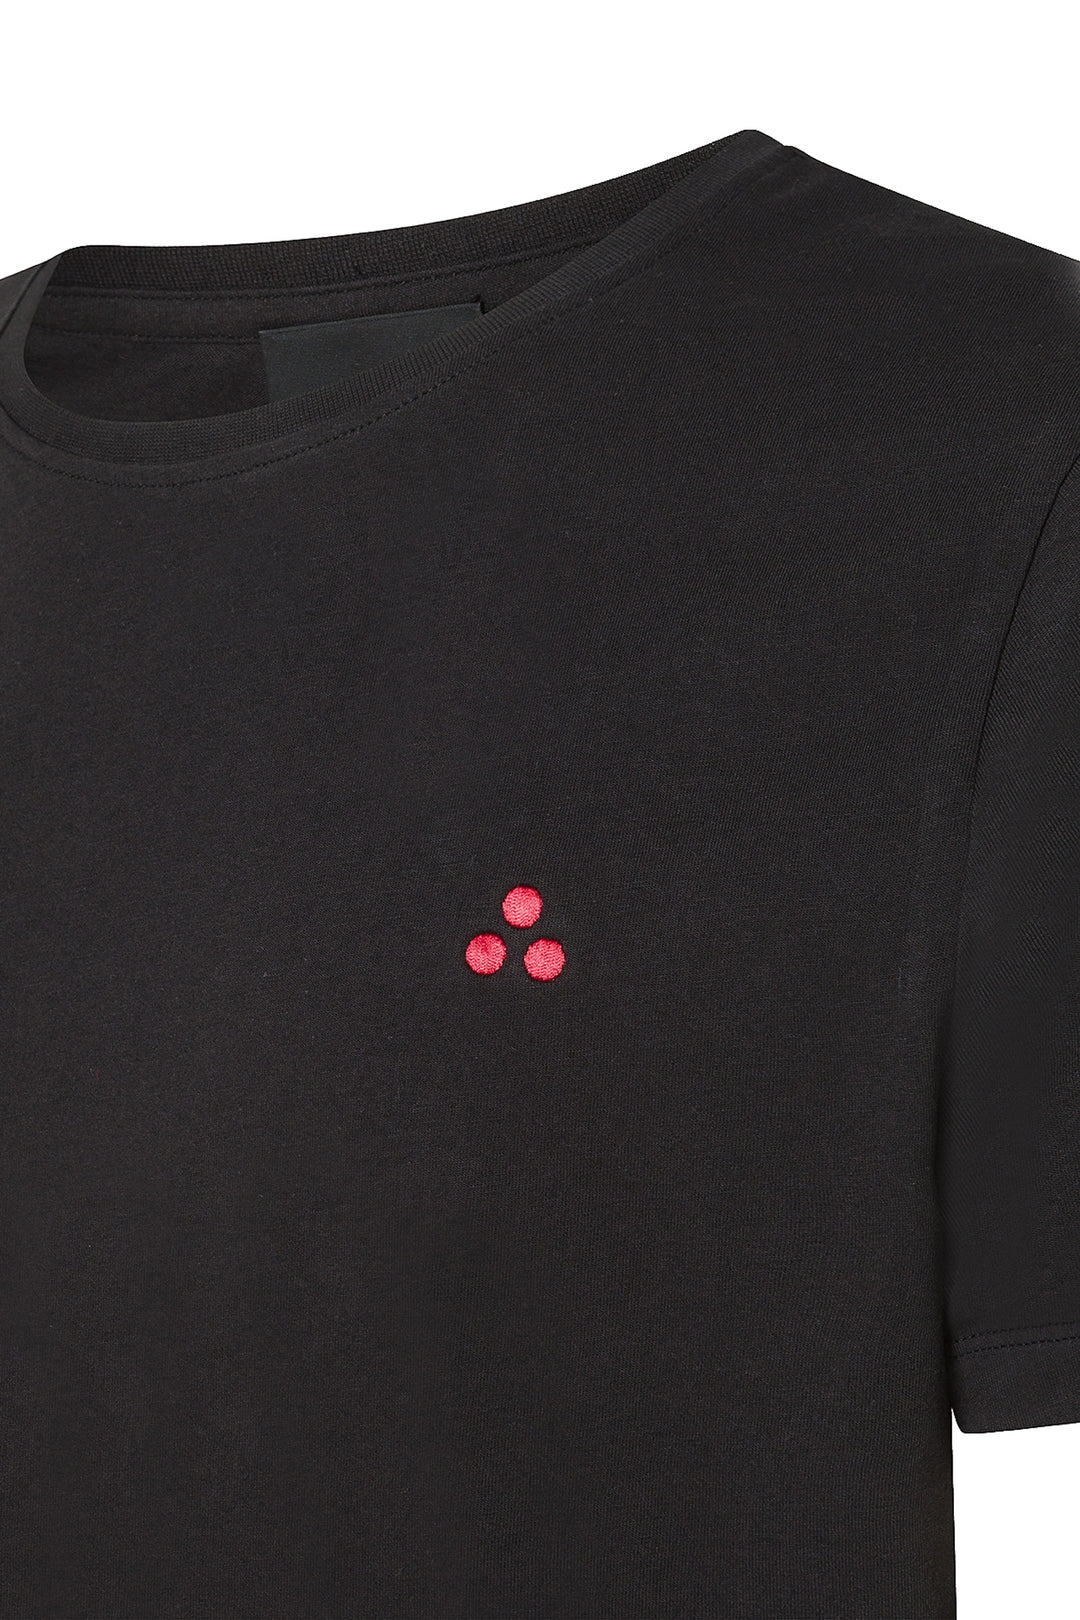 PEUTEREY T-shirt nera in cotone con logo ricamato sul petto - Mancinelli 1954